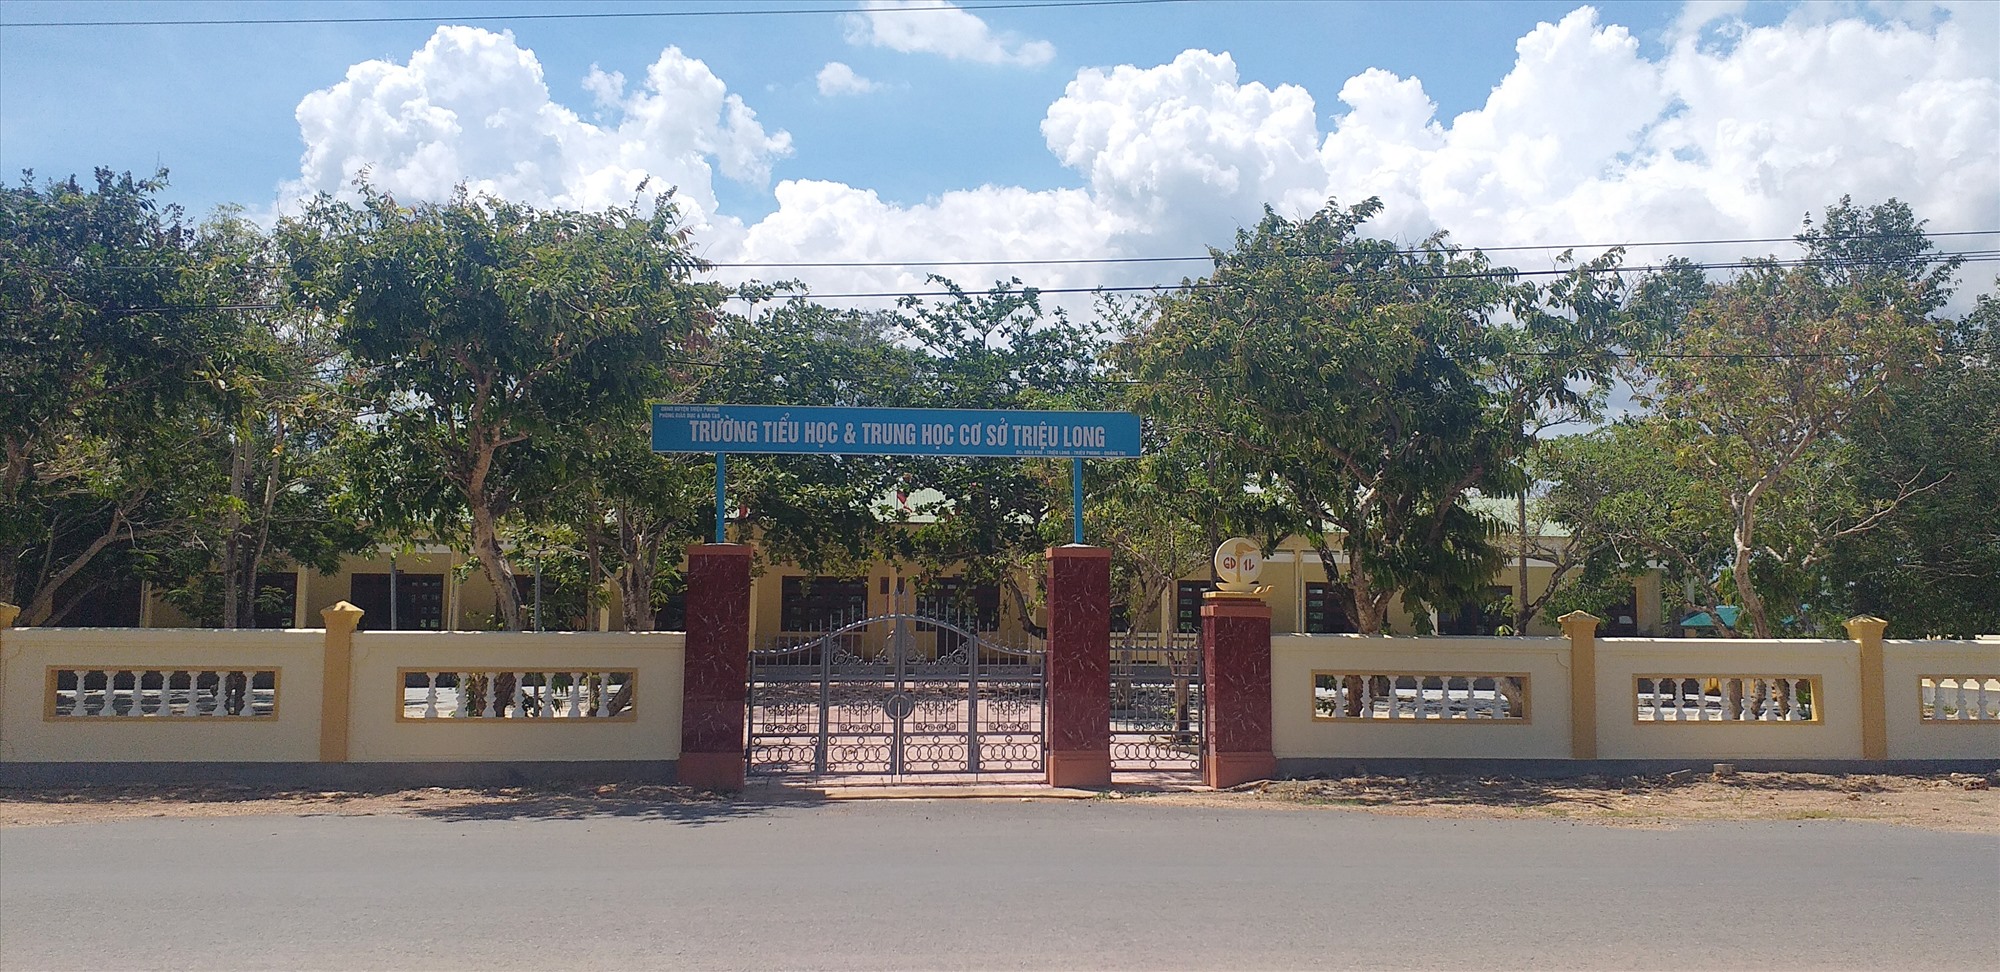 Hệ thống tường rào và sân của Trường Tiểu học và THCS Triệu Long được đầu tư xây mới - Ảnh: L.C.T